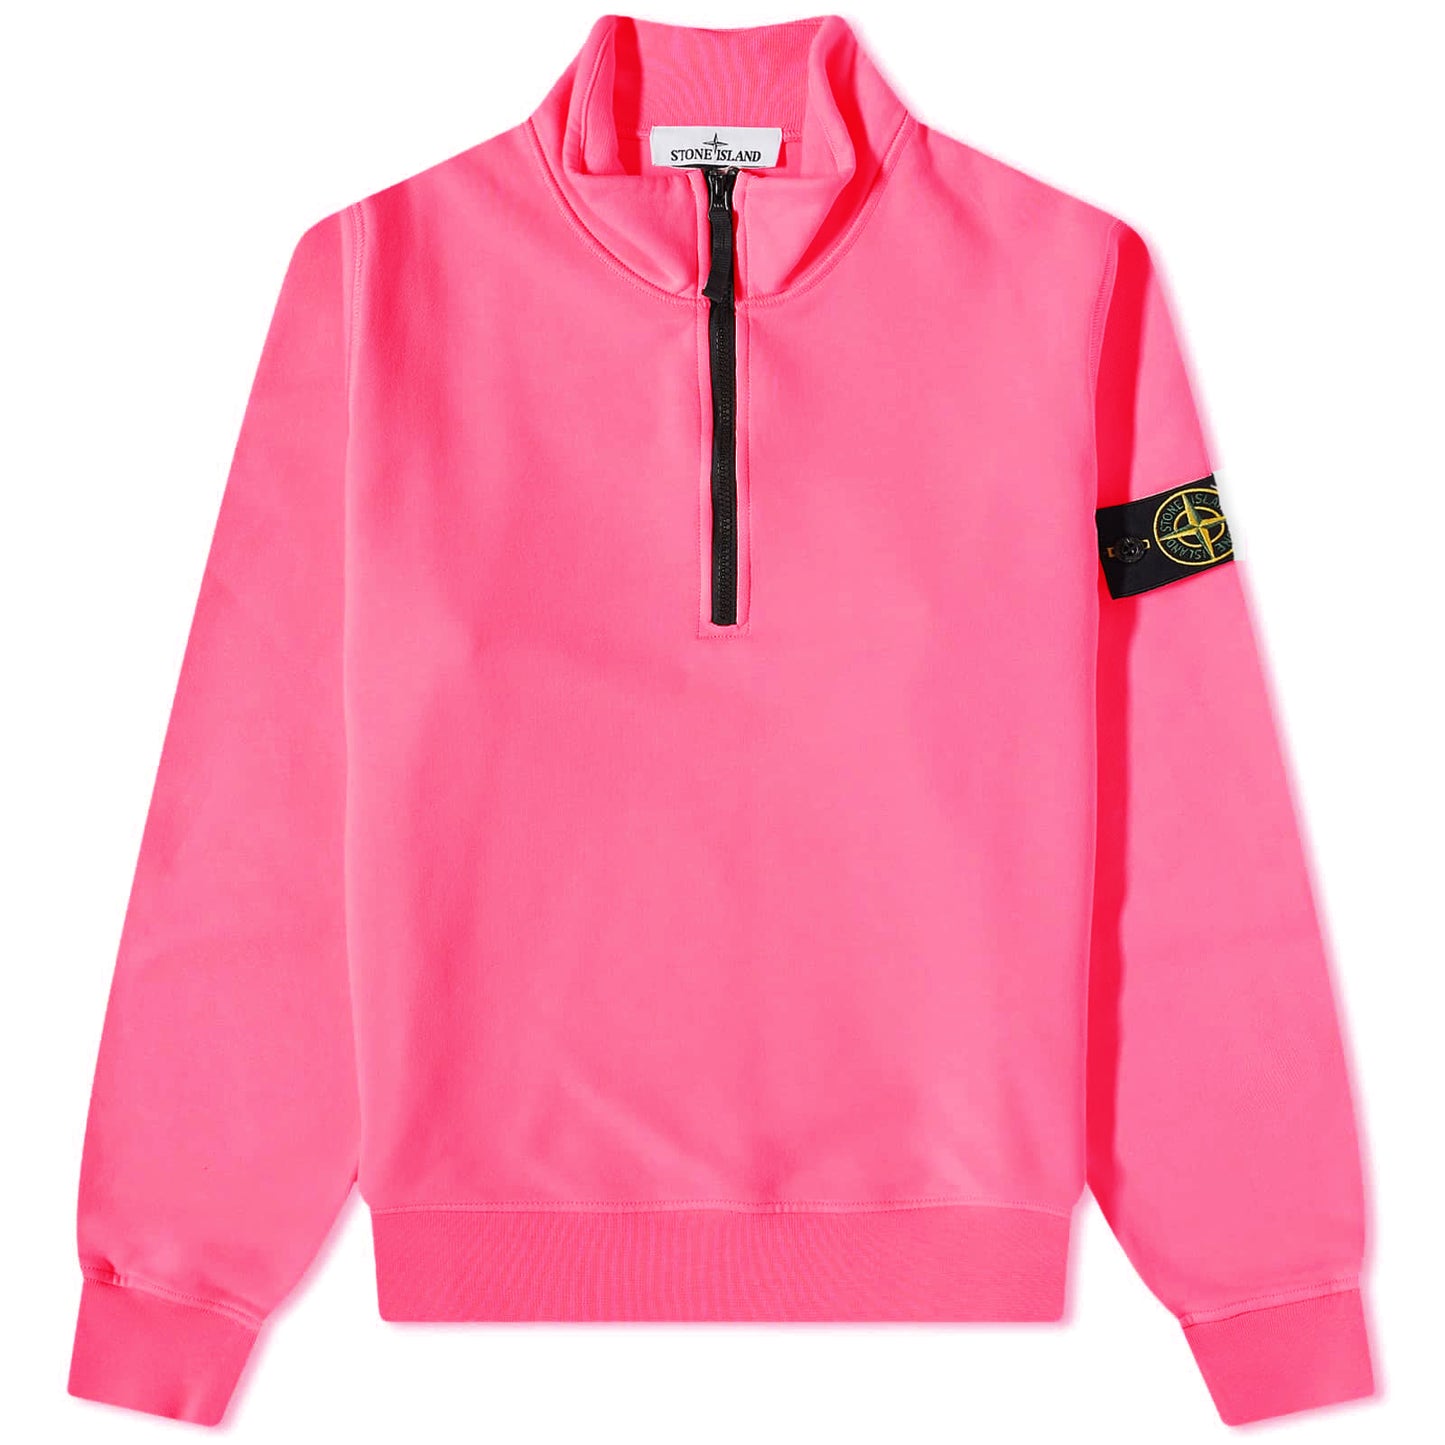 Stone Island Pink Zip Sweatshirt - DANYOUNGUK